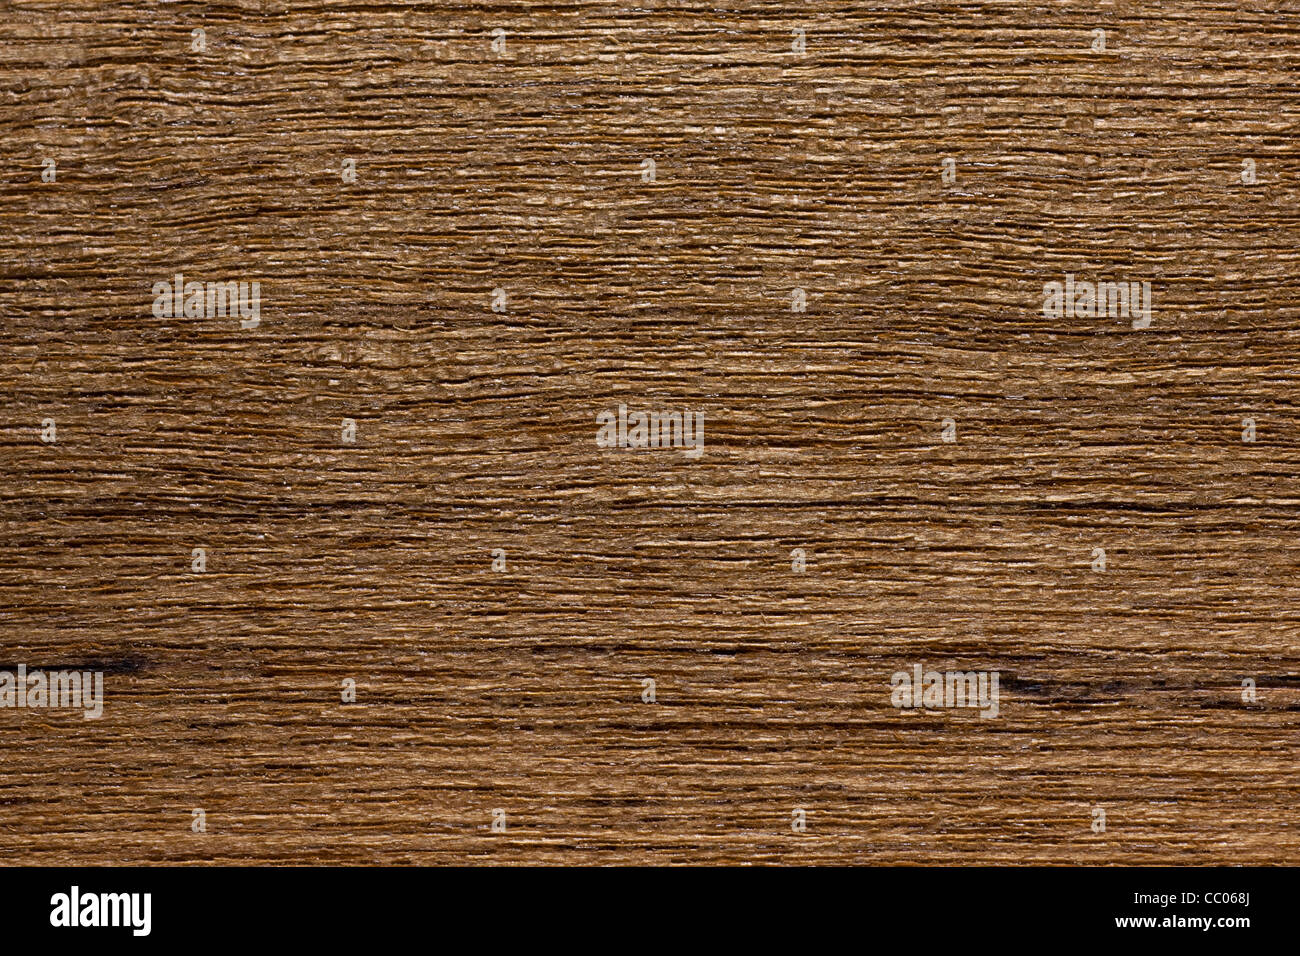 Wood grain of teak (Tectona grandis), Asia Stock Photo